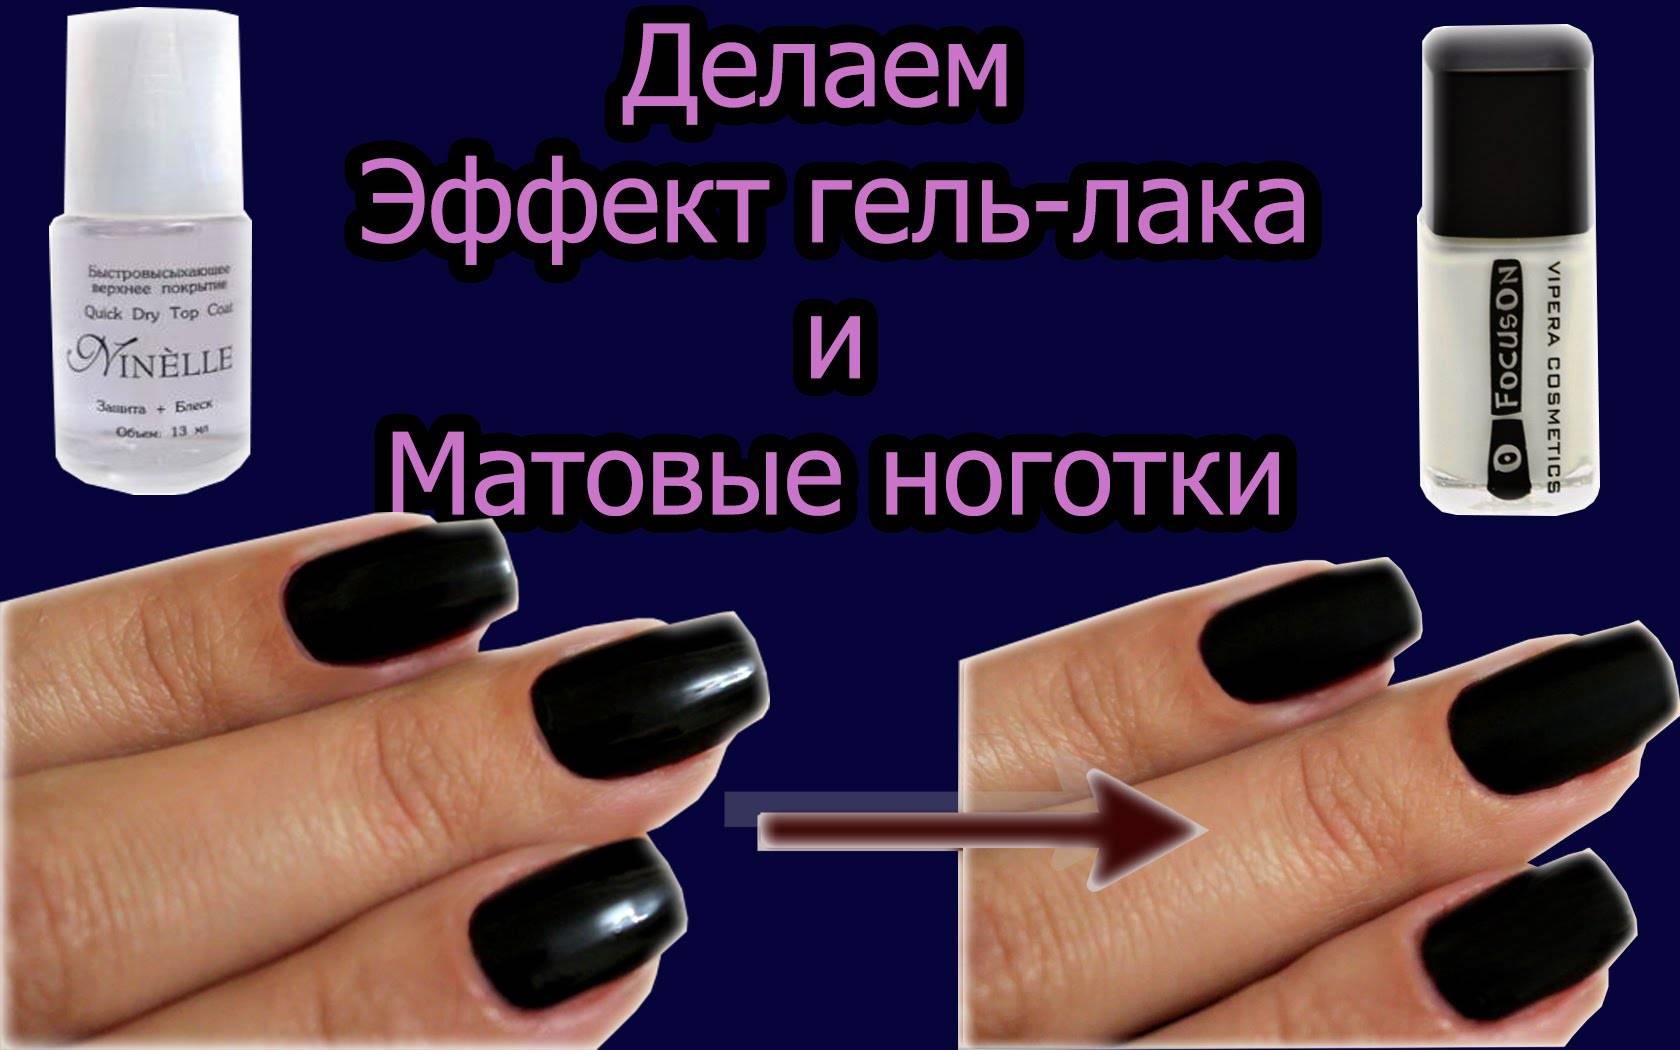 Матовый топ для ногтей (гель-лака)